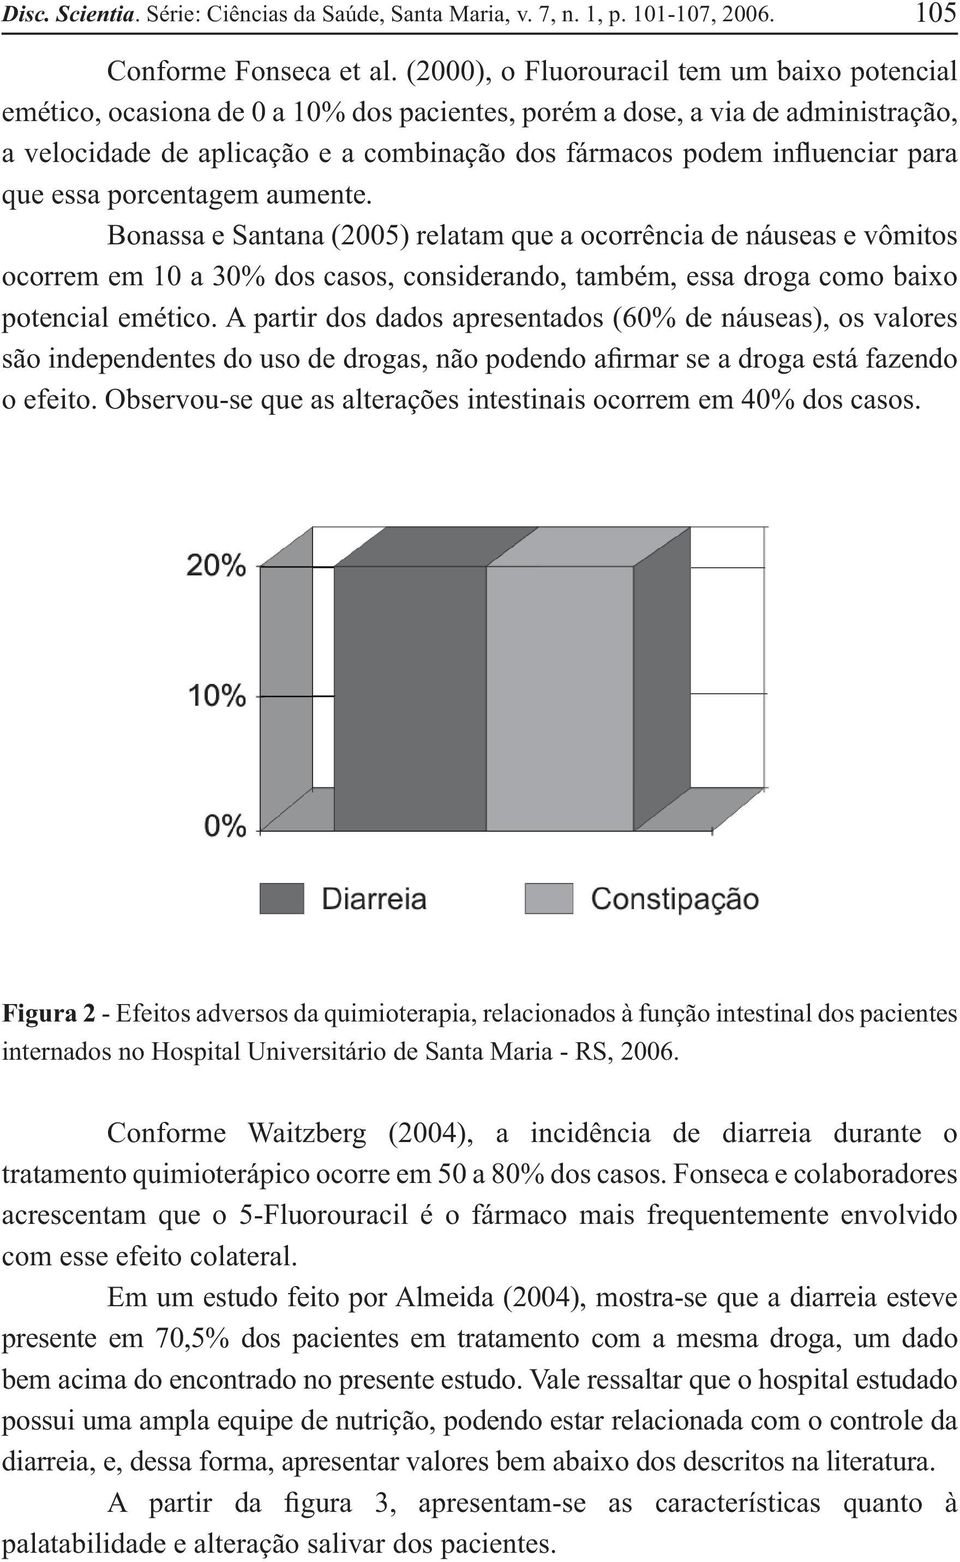 para que essa porcentagem aumente. Bonassa e Santana (2005) relatam que a ocorrência de náuseas e vômitos ocorrem em 10 a 30% dos casos, considerando, também, essa droga como baixo potencial emético.